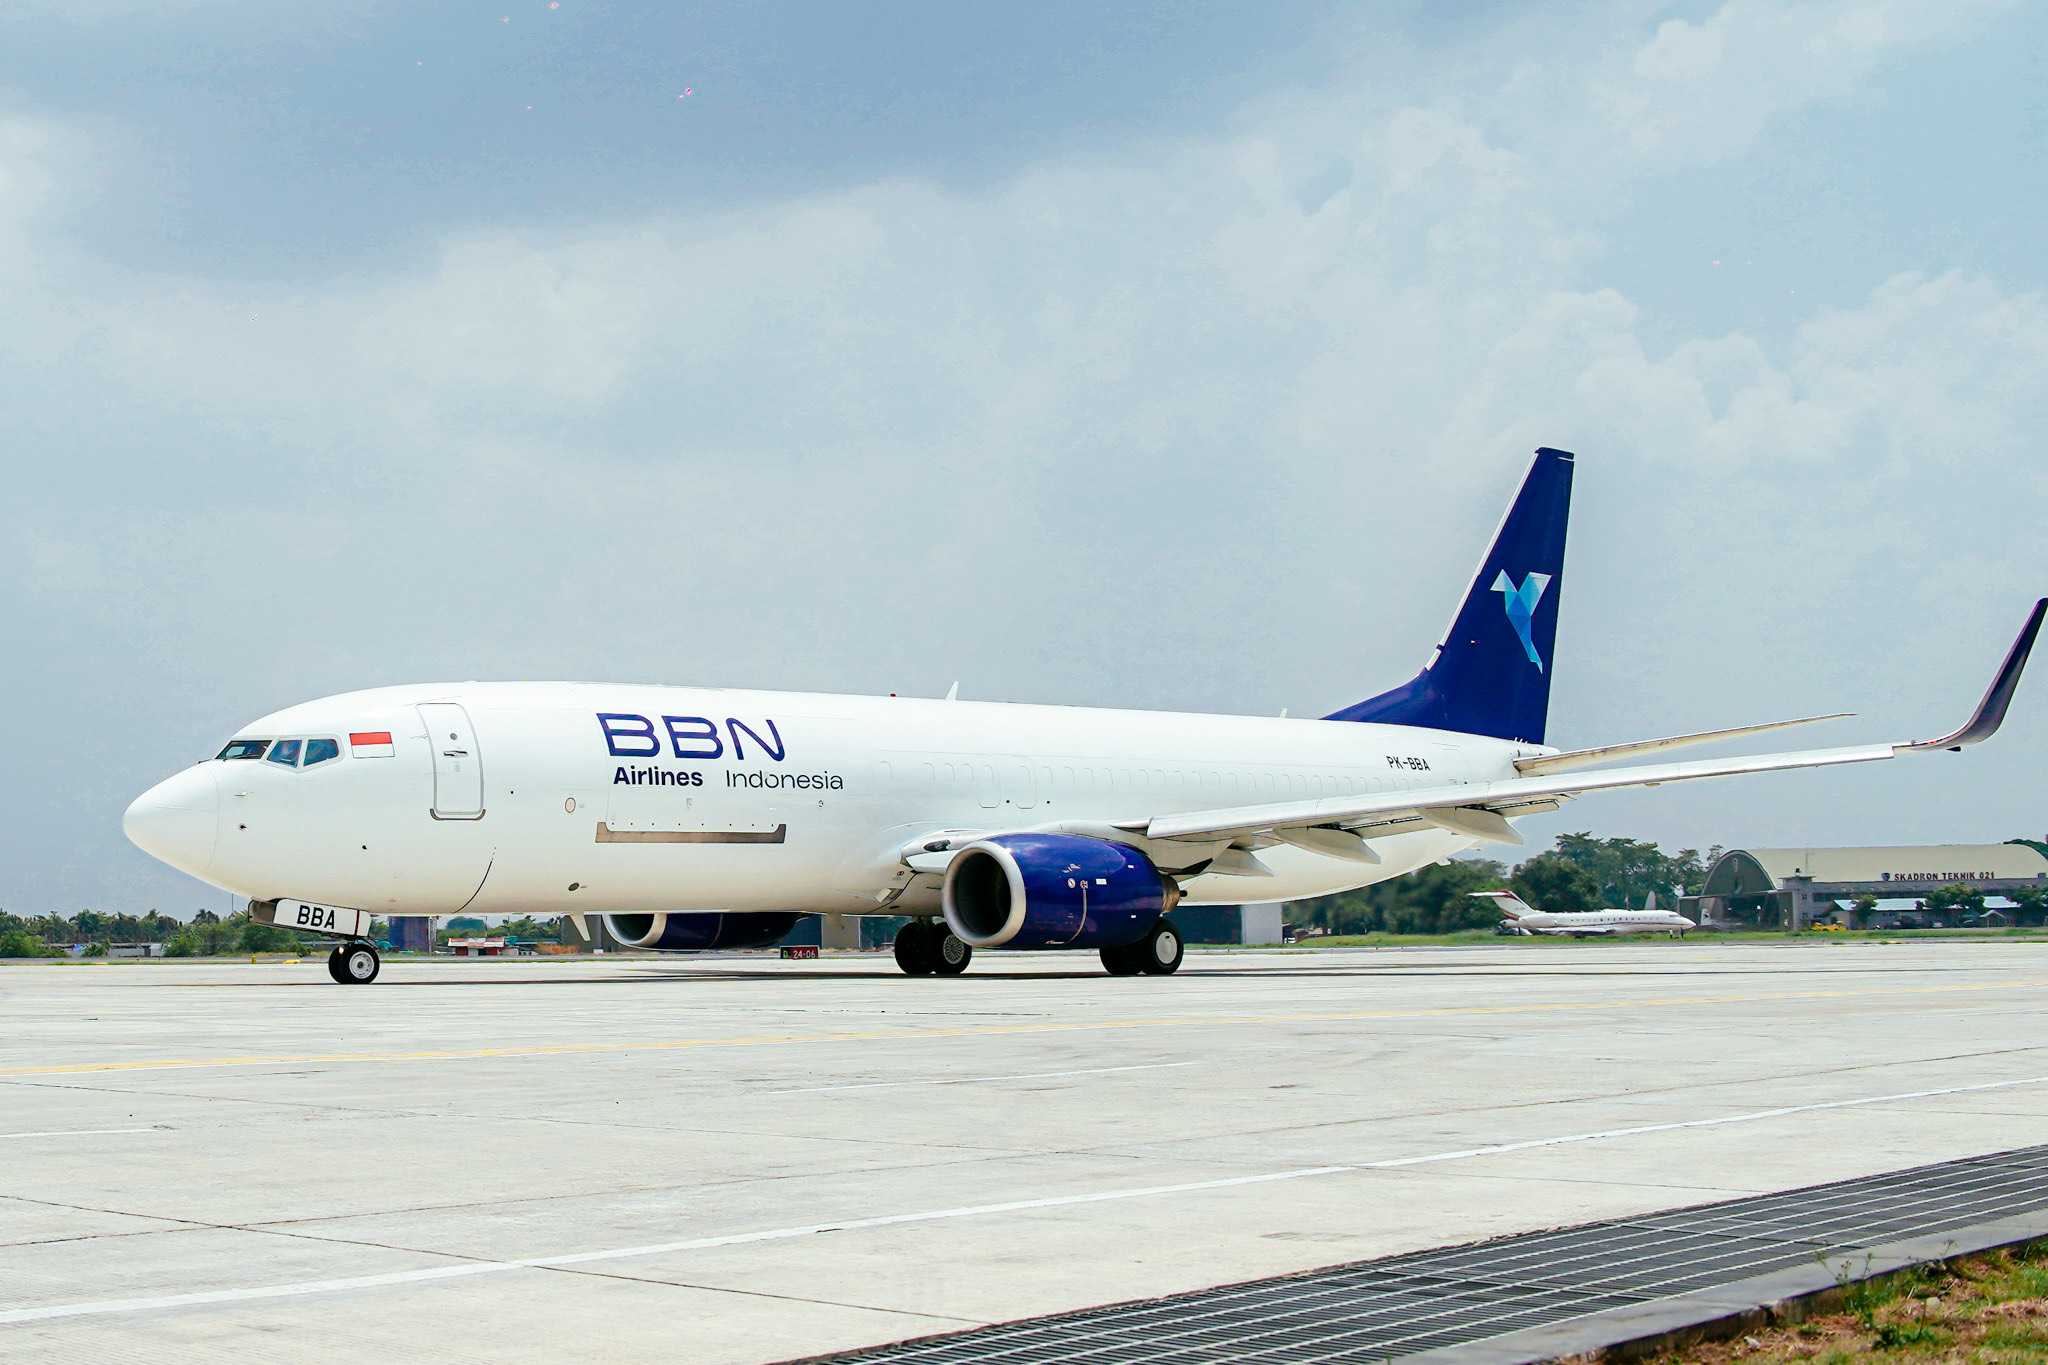 Perkuat Layanan, BBN Airlines Indonesia Tambah 4 Armada Boeing 737 